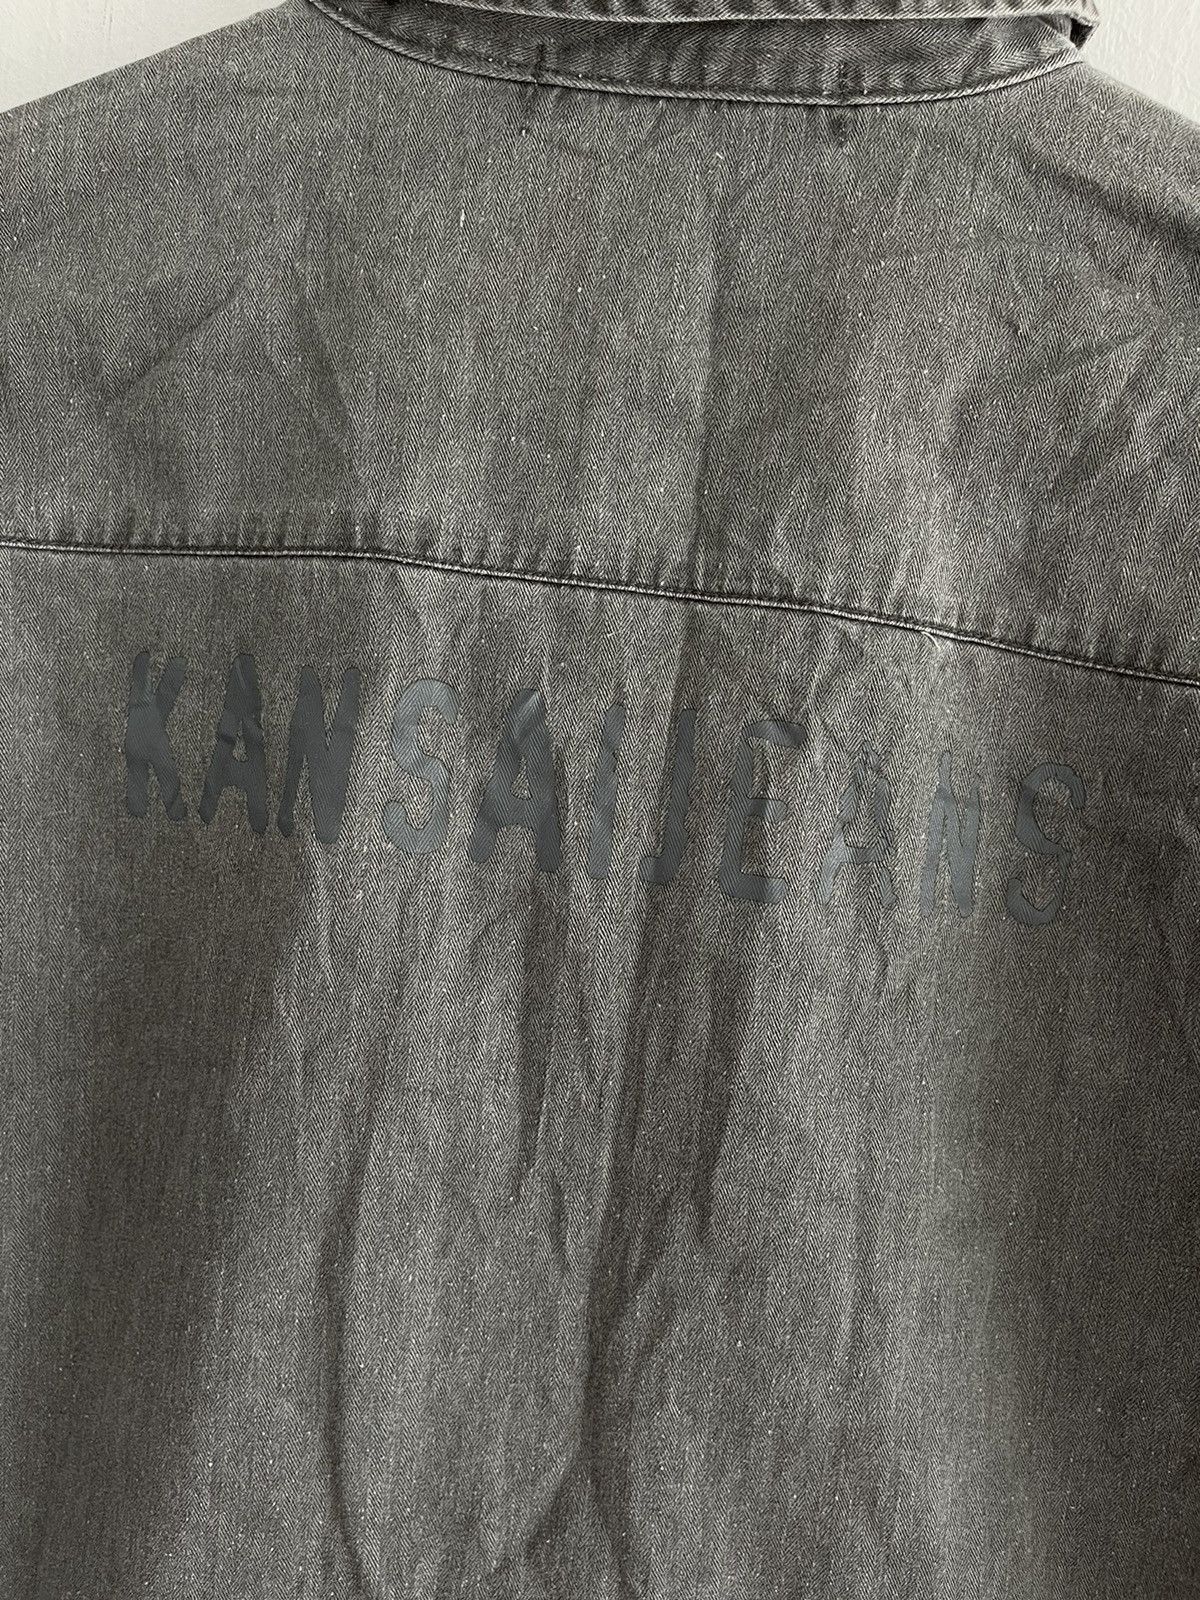 Japanese Brand - Vintage Kansai Jeans Zip Up Denim Shirt - 11